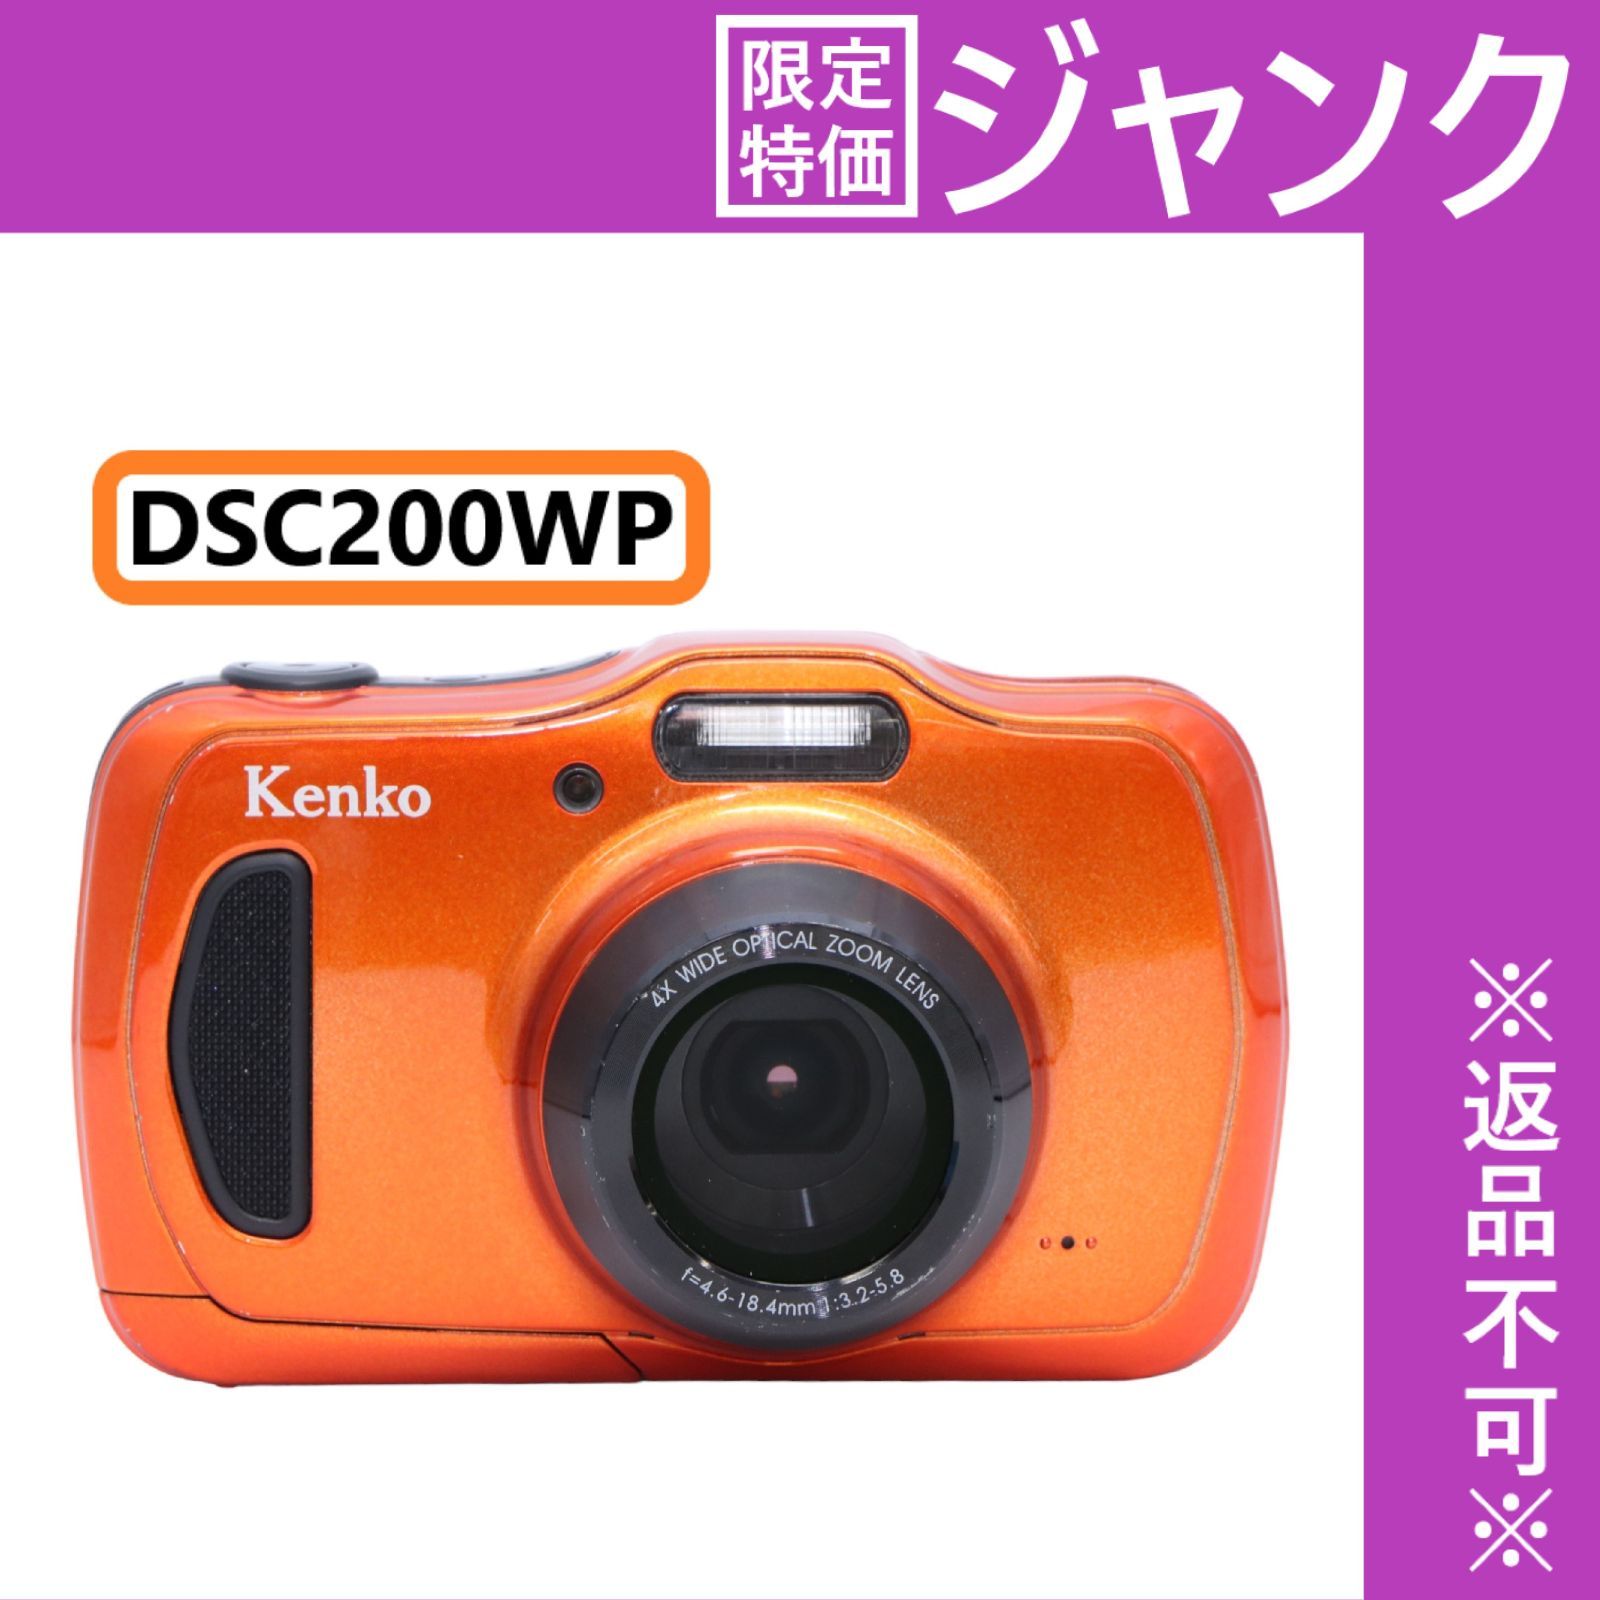 C3271】KENKO 防水デジタルカメラ DSC200WP | www.carmenundmelanie.at